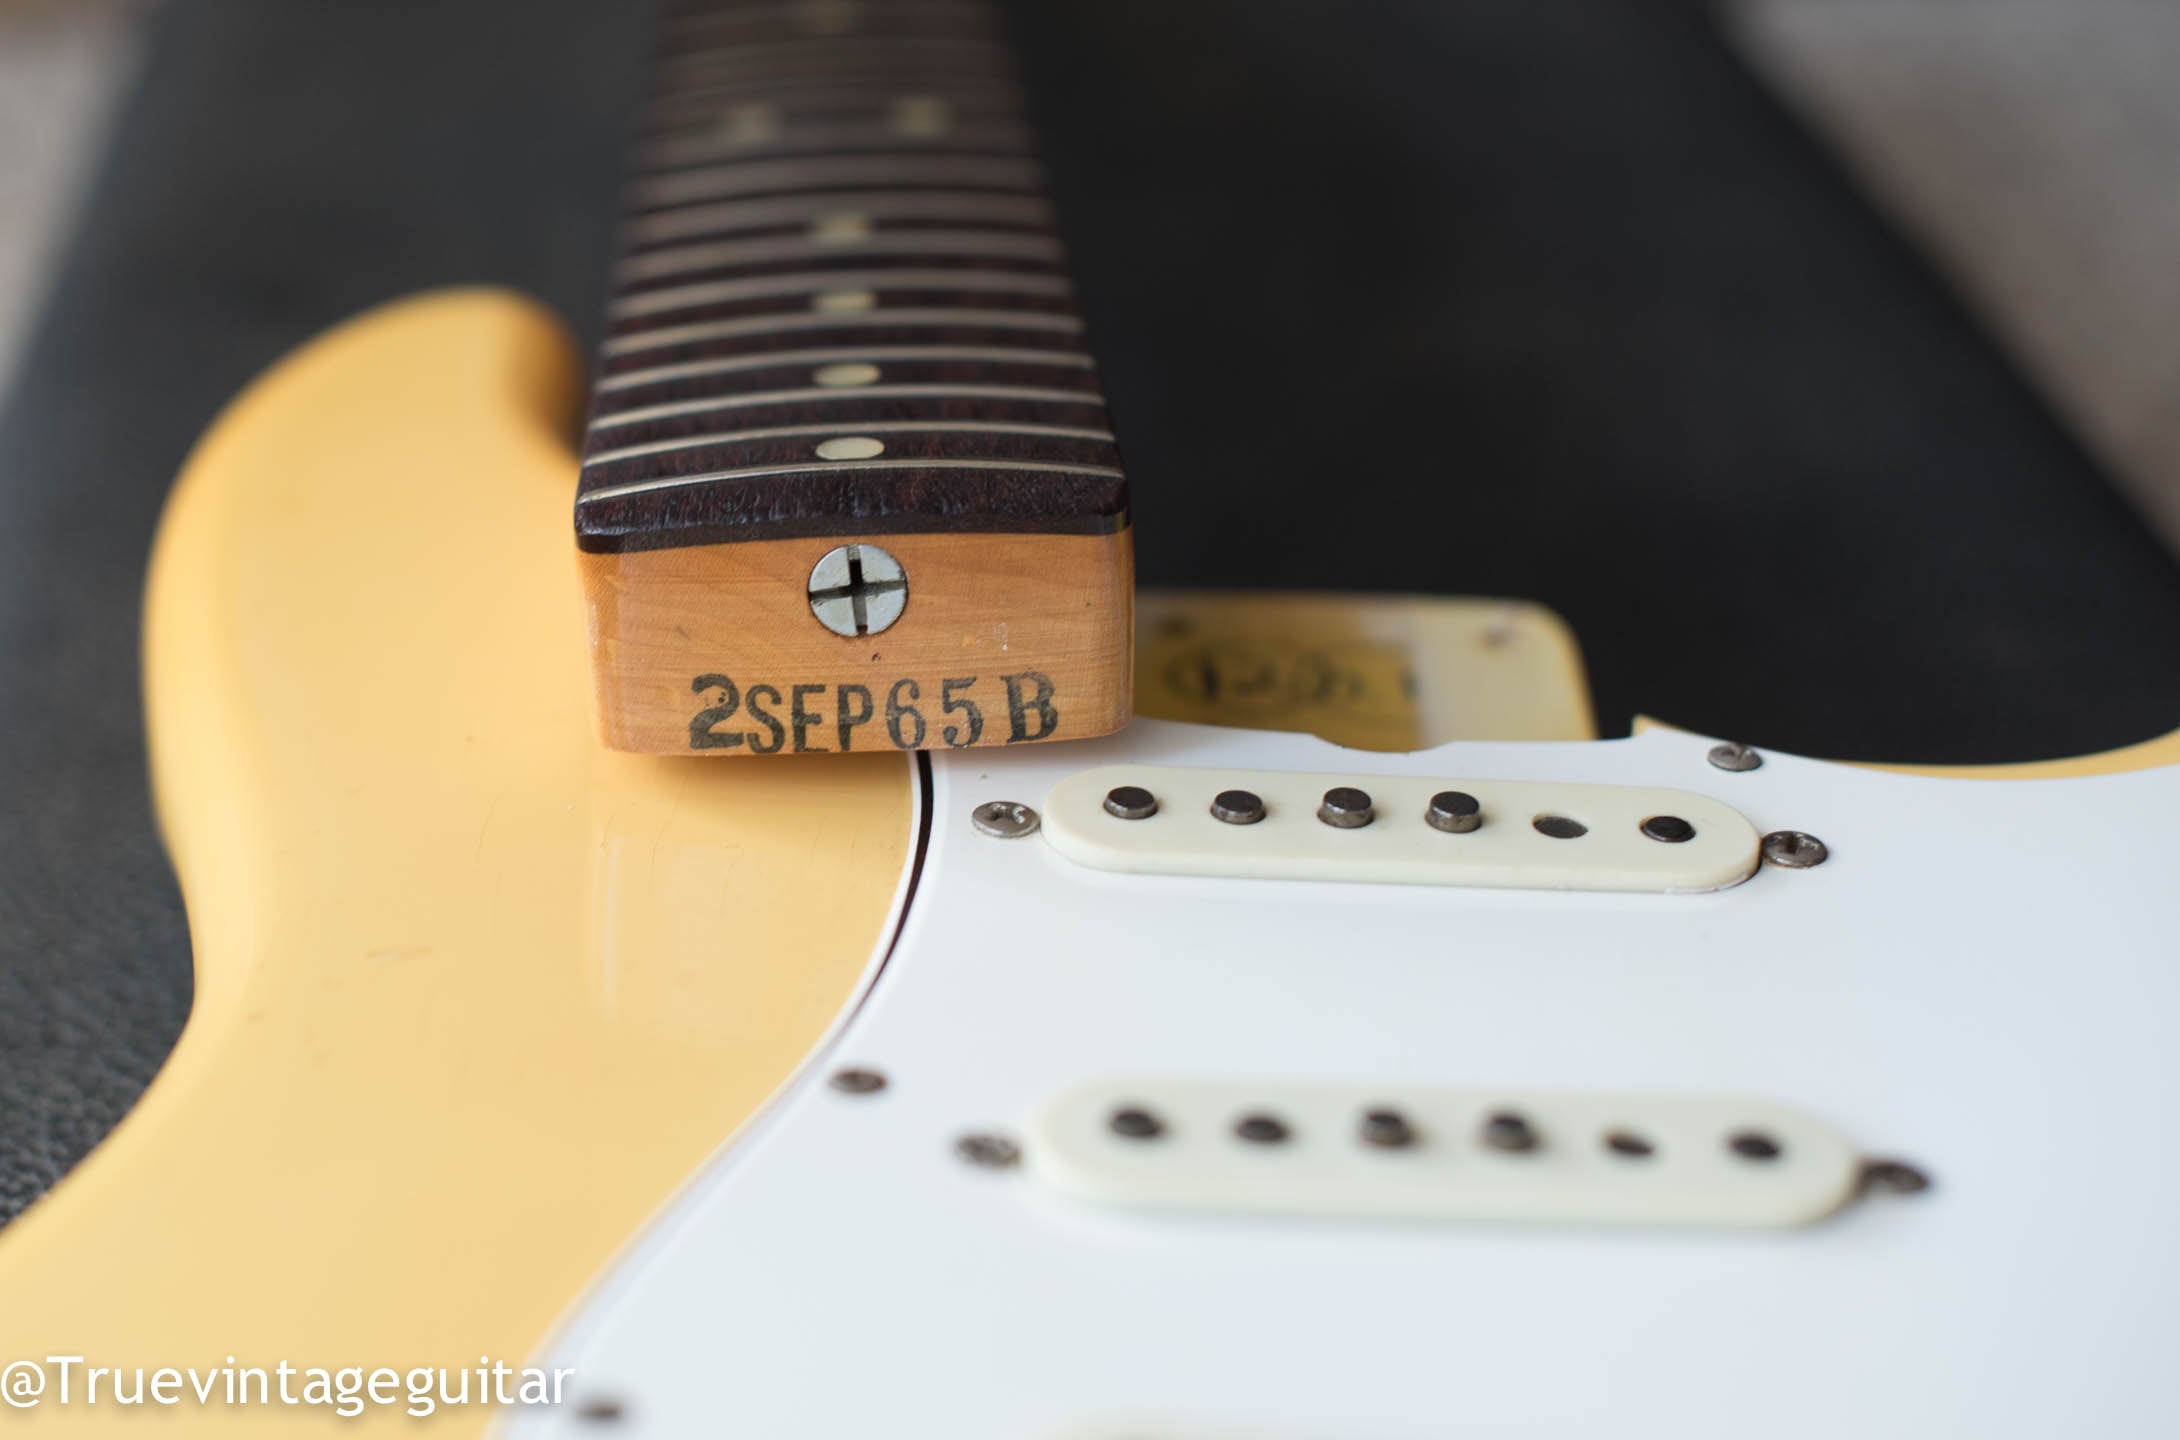 Fender Stratocaster dating neck heel date stamp